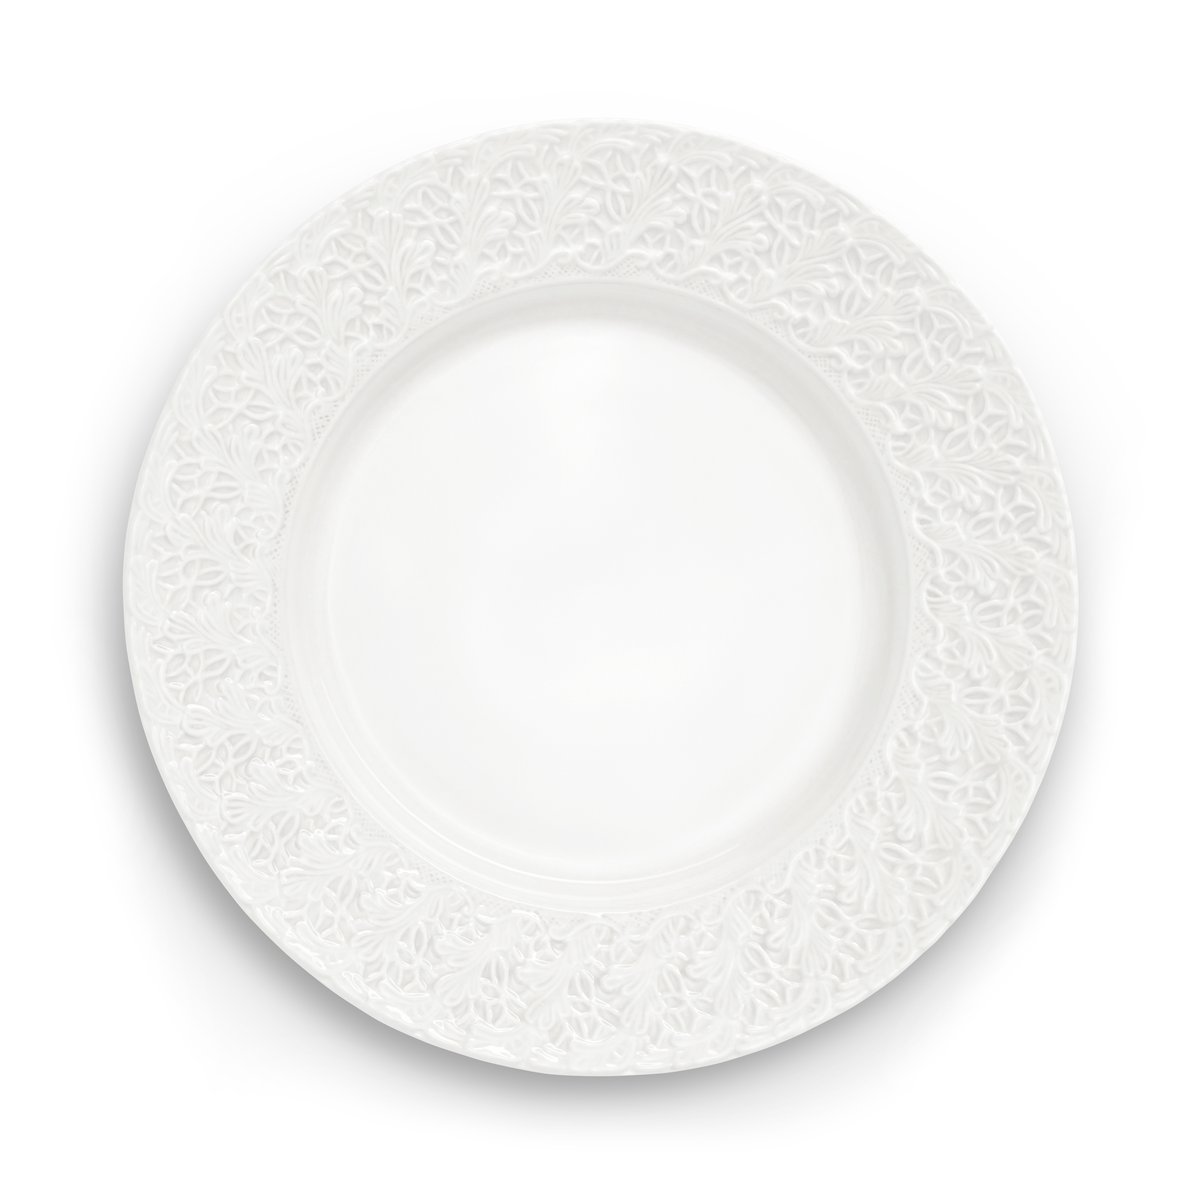 mateus assiette lace 32 cm blanc